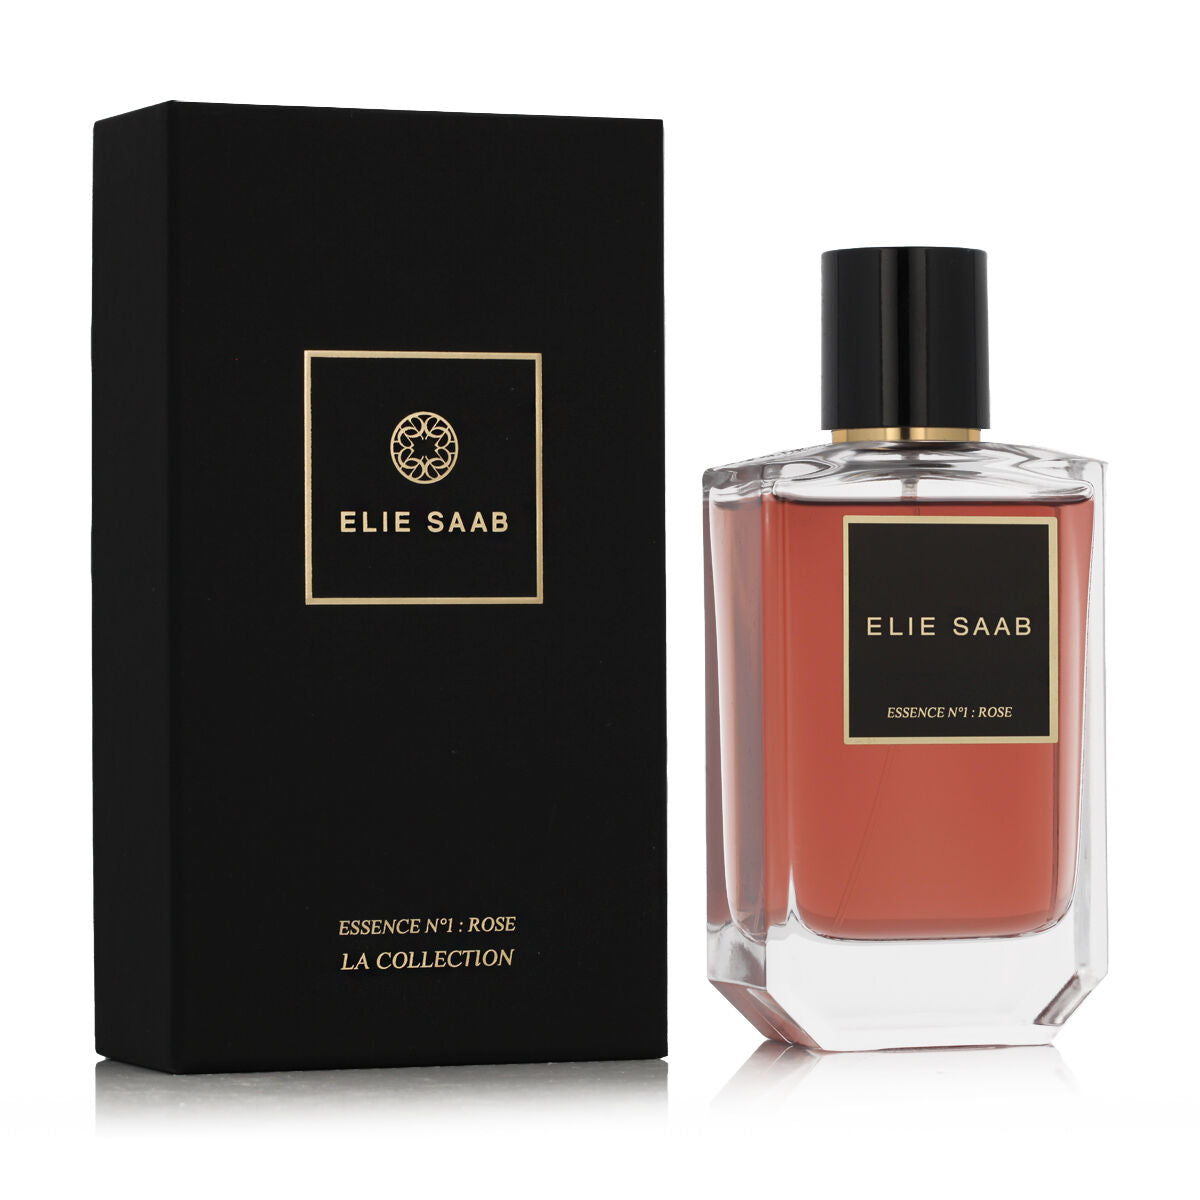 Perfume unisexe Elie Saab Essence n ° 1 Rose 100 ml